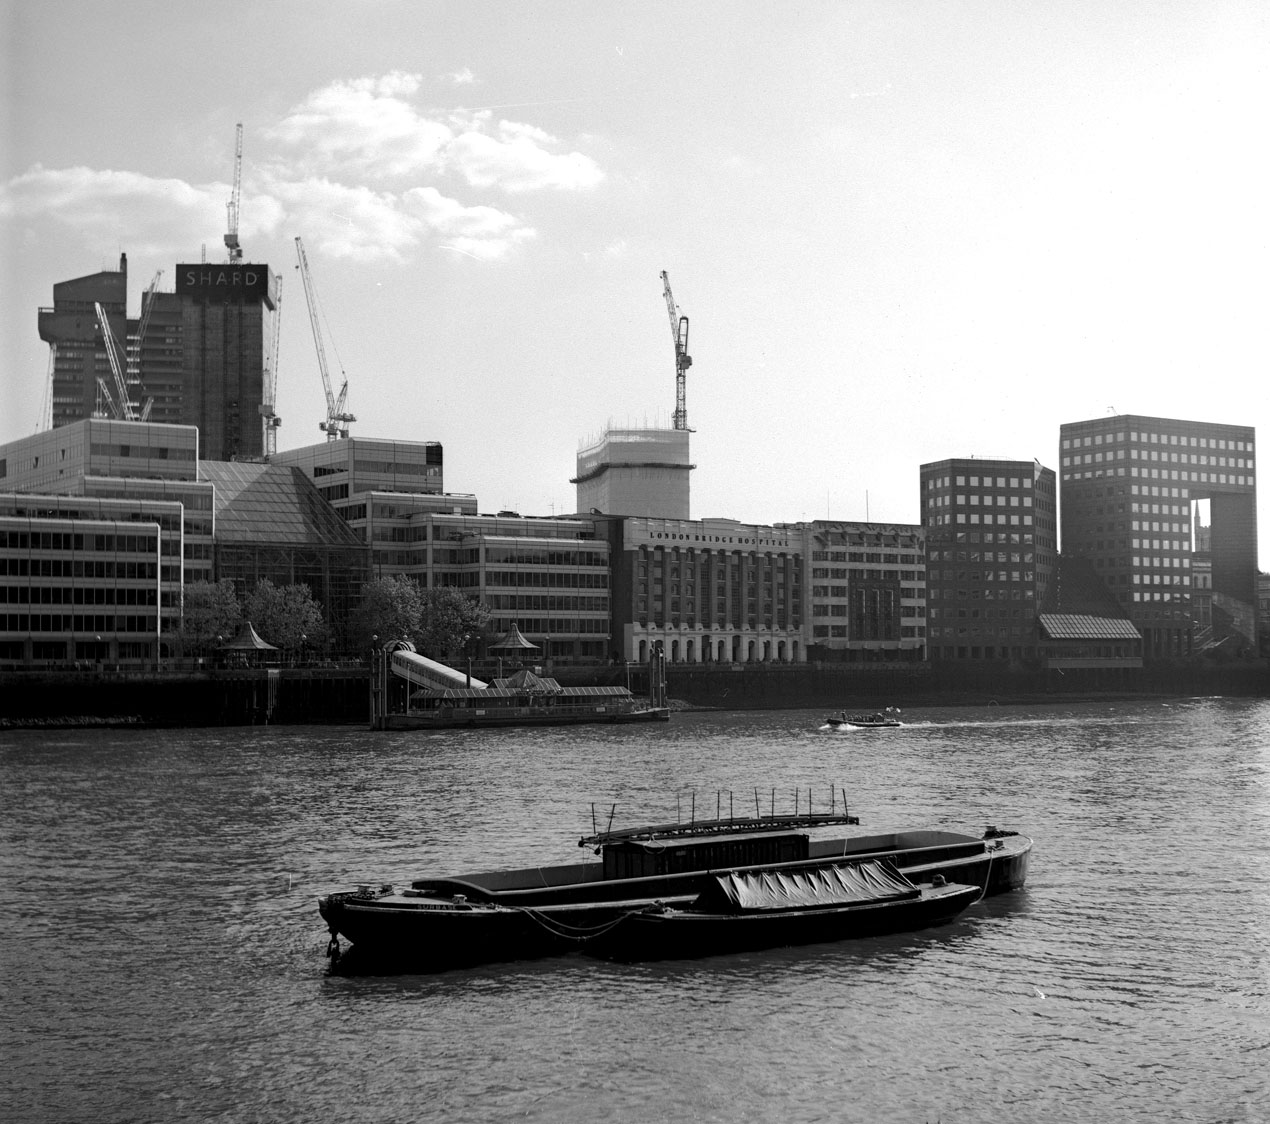 fotka / image Thames, Summer in London